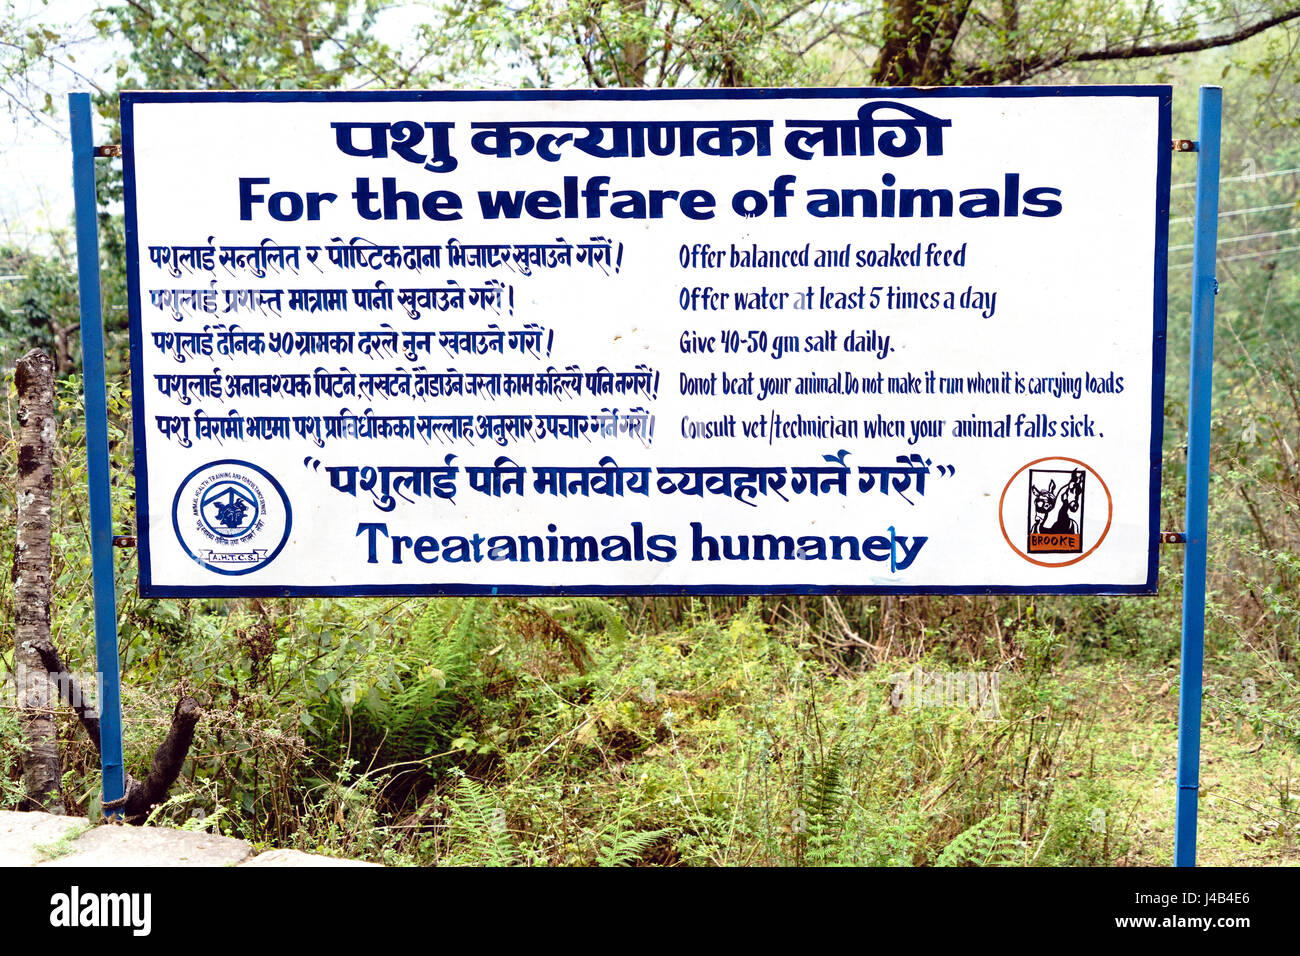 Firmare la promozione di trattamento umano degli animali in Nepal. Foto Stock